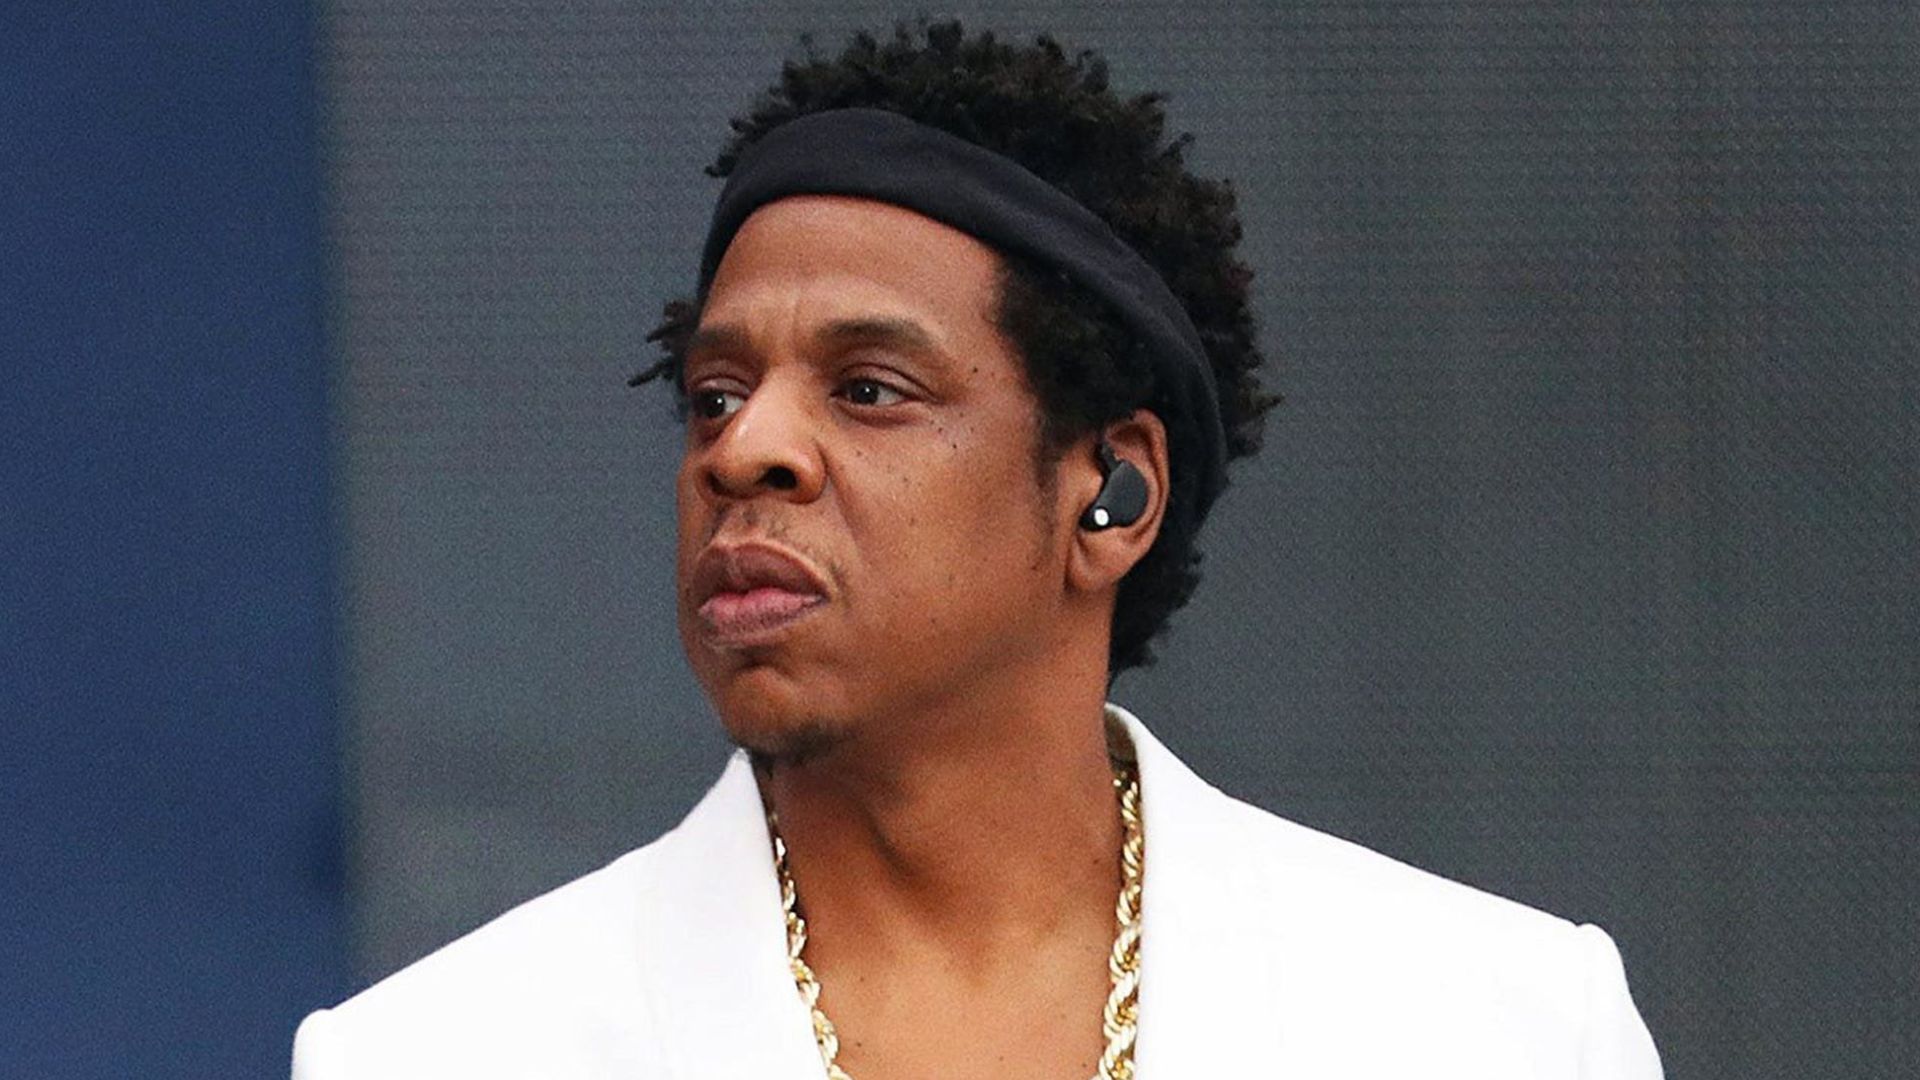 GRANDAMAMBO - Jay-Z disse numa entrevista que não cobra nada para  participações. Sim, caso você queira meter Jay-Z na sua música, não precisa  pagar nada, basta ele gostar de você. Haviam rumores